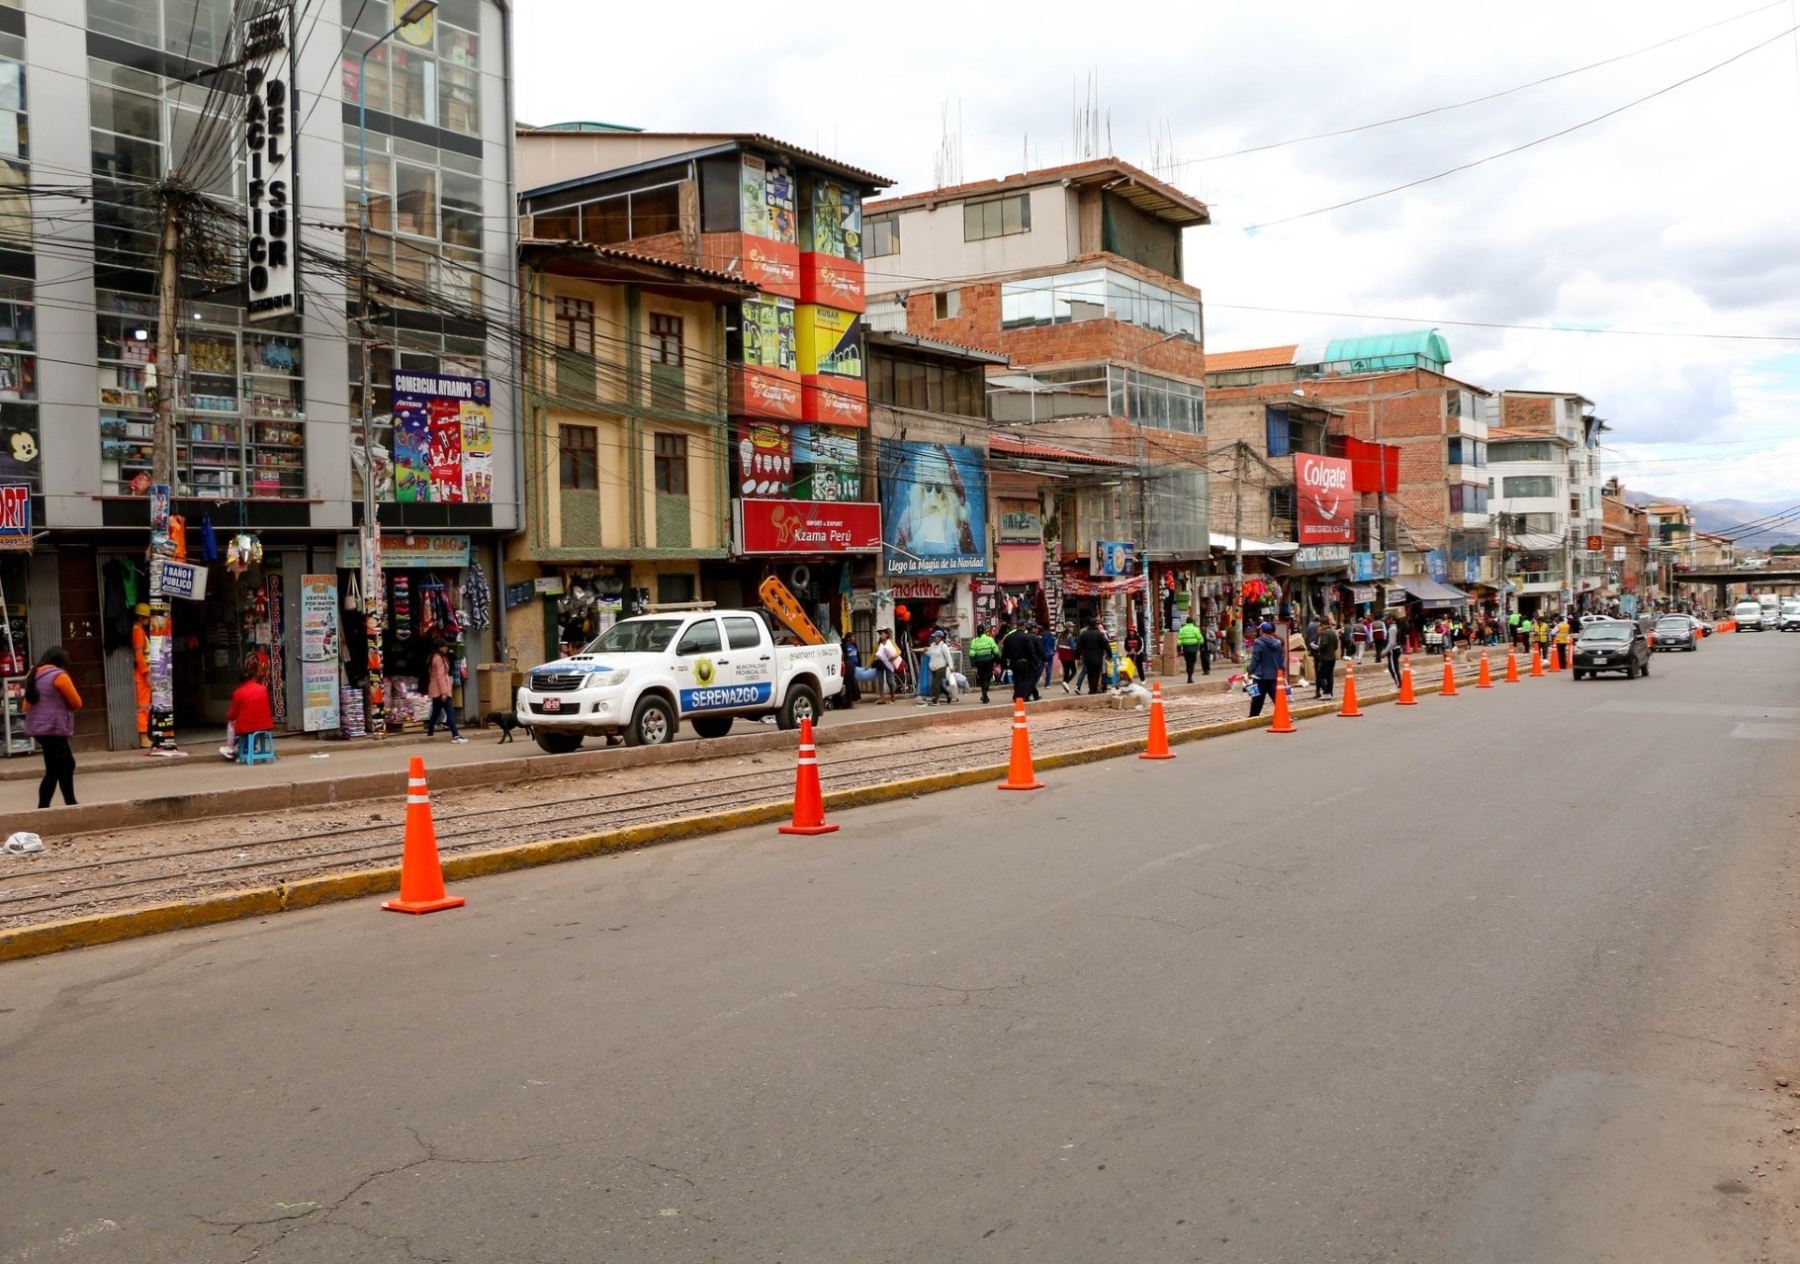 El caso de brote de gripe aviar en Cusco se detectó en un predio ubicado en la avenida Ejército, que une el centro de Cusco con el distrito de Santiago. El lugar fue cerrado y declarado en cuarentena. ANDINA/Percy Hurtado Santillán